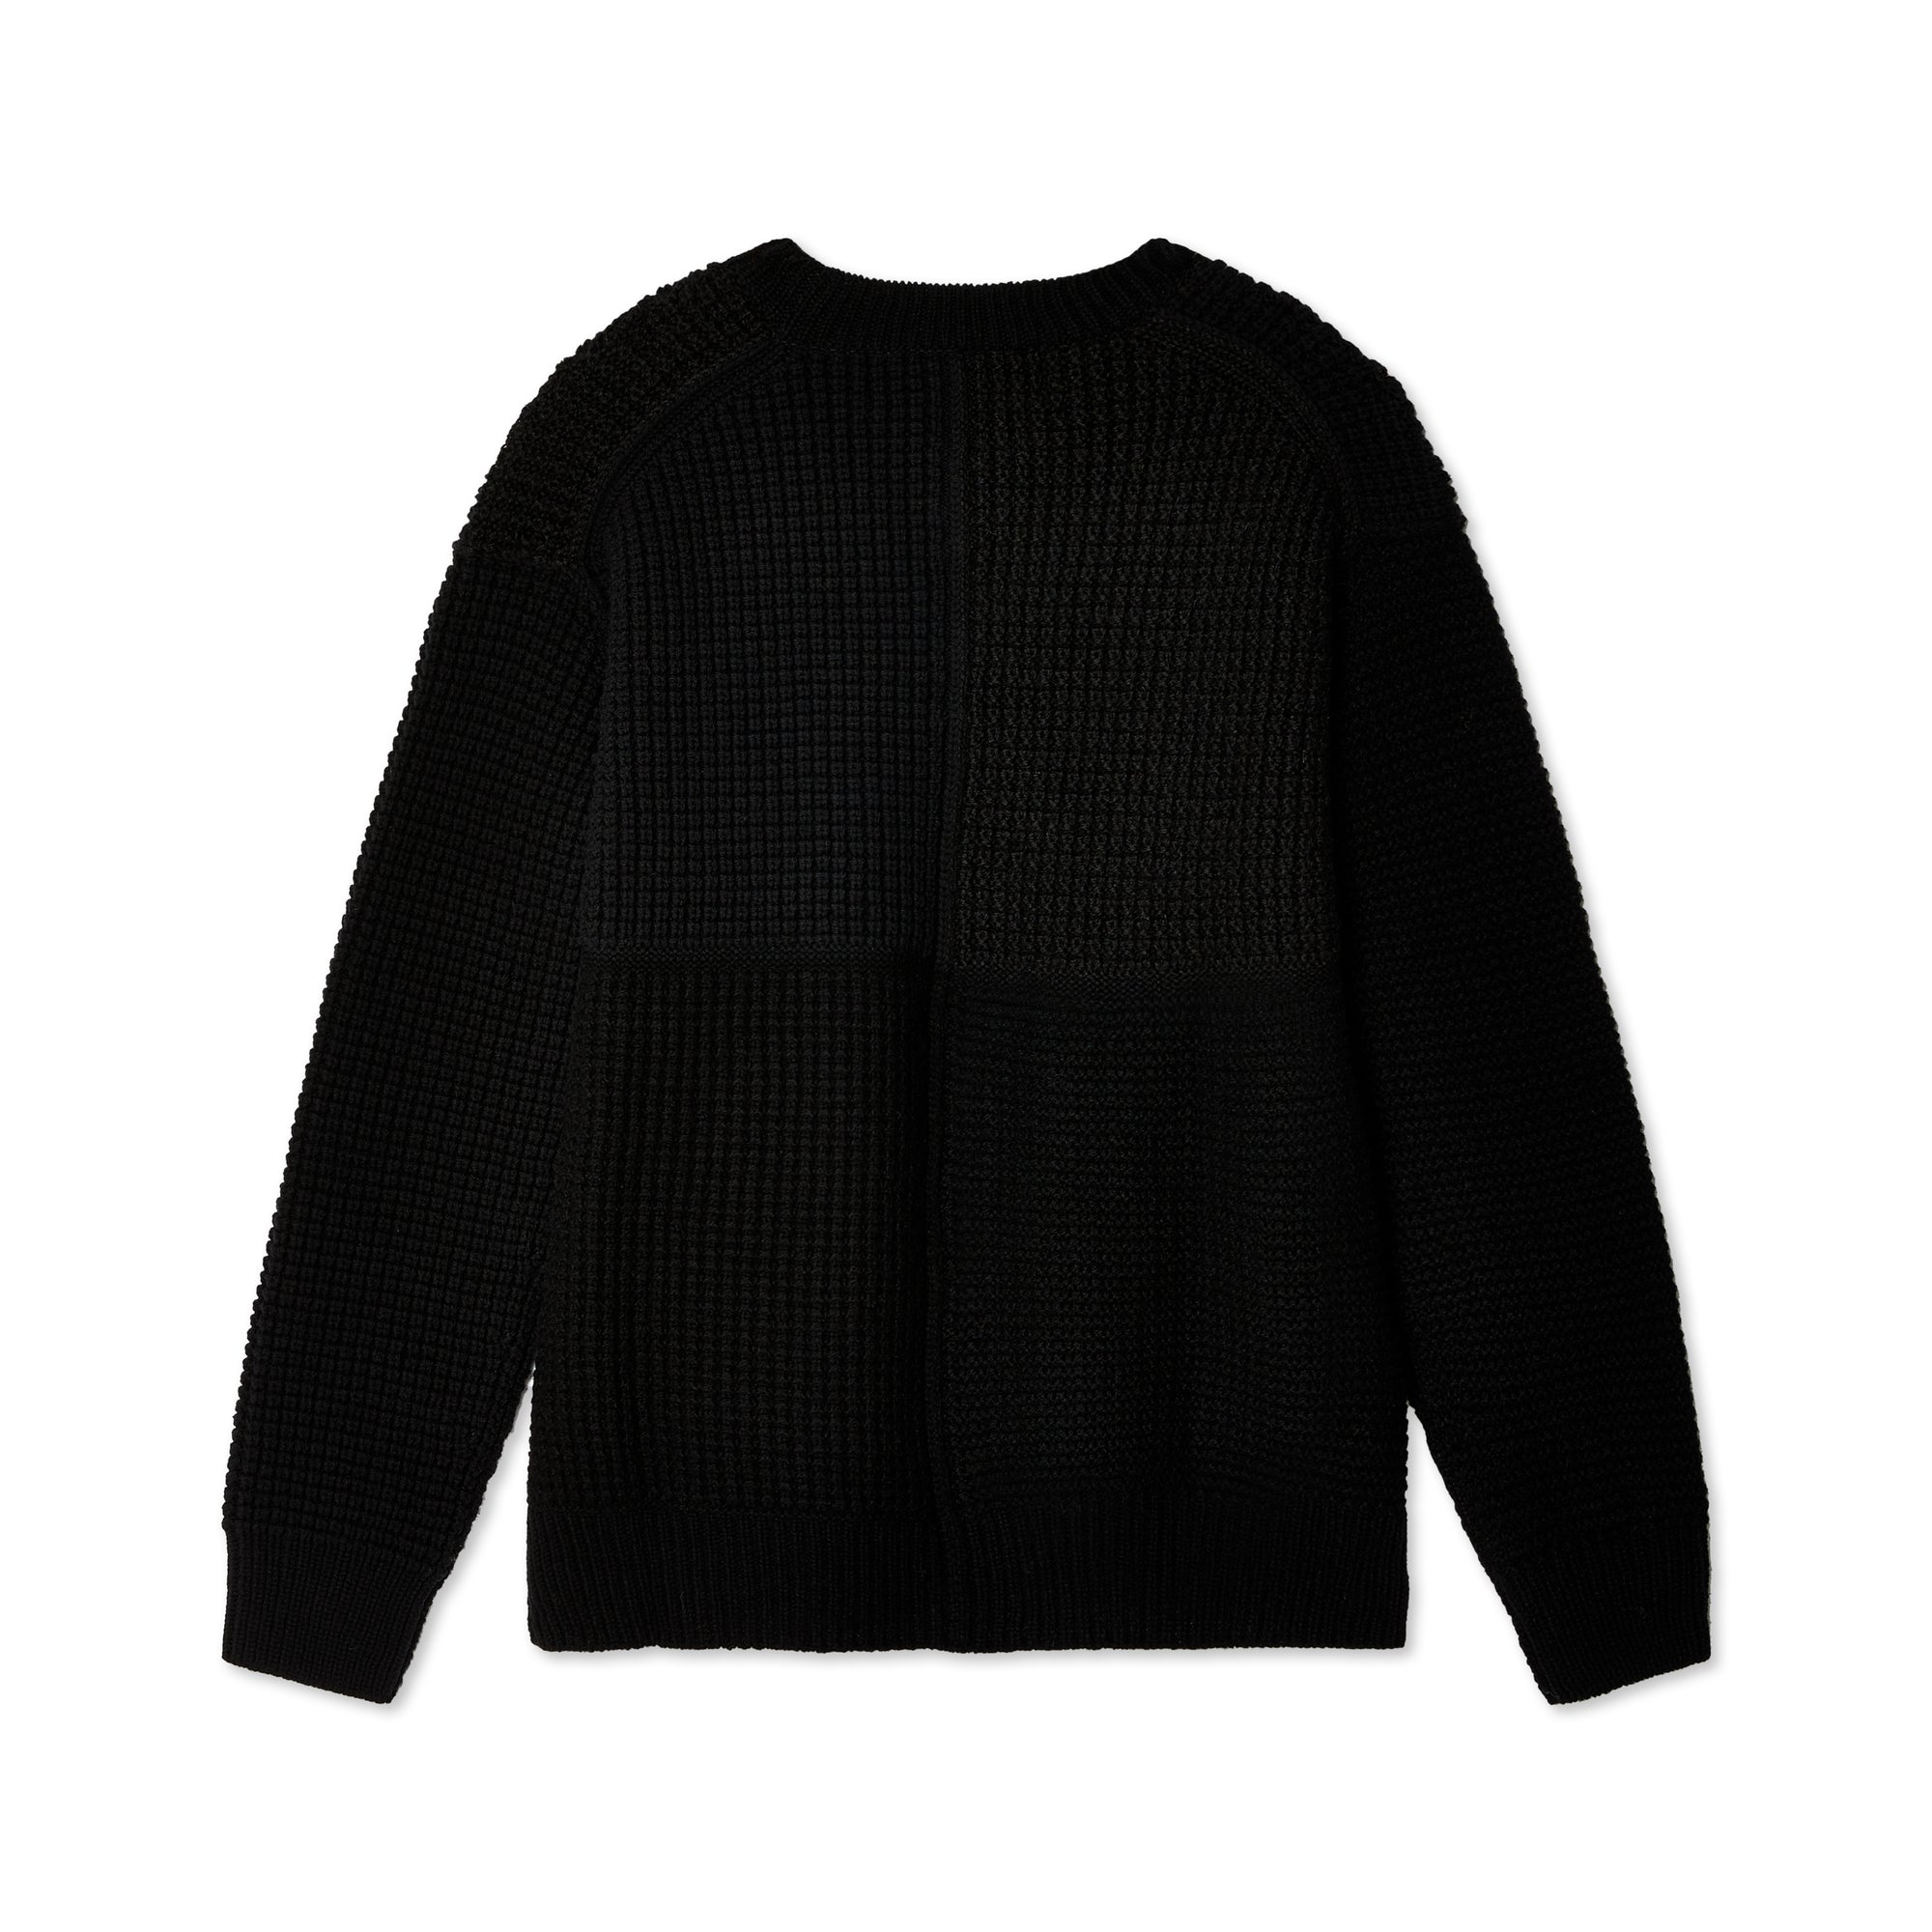 Comme des Garçons Homme - Men's Sweater - (Black) view 2